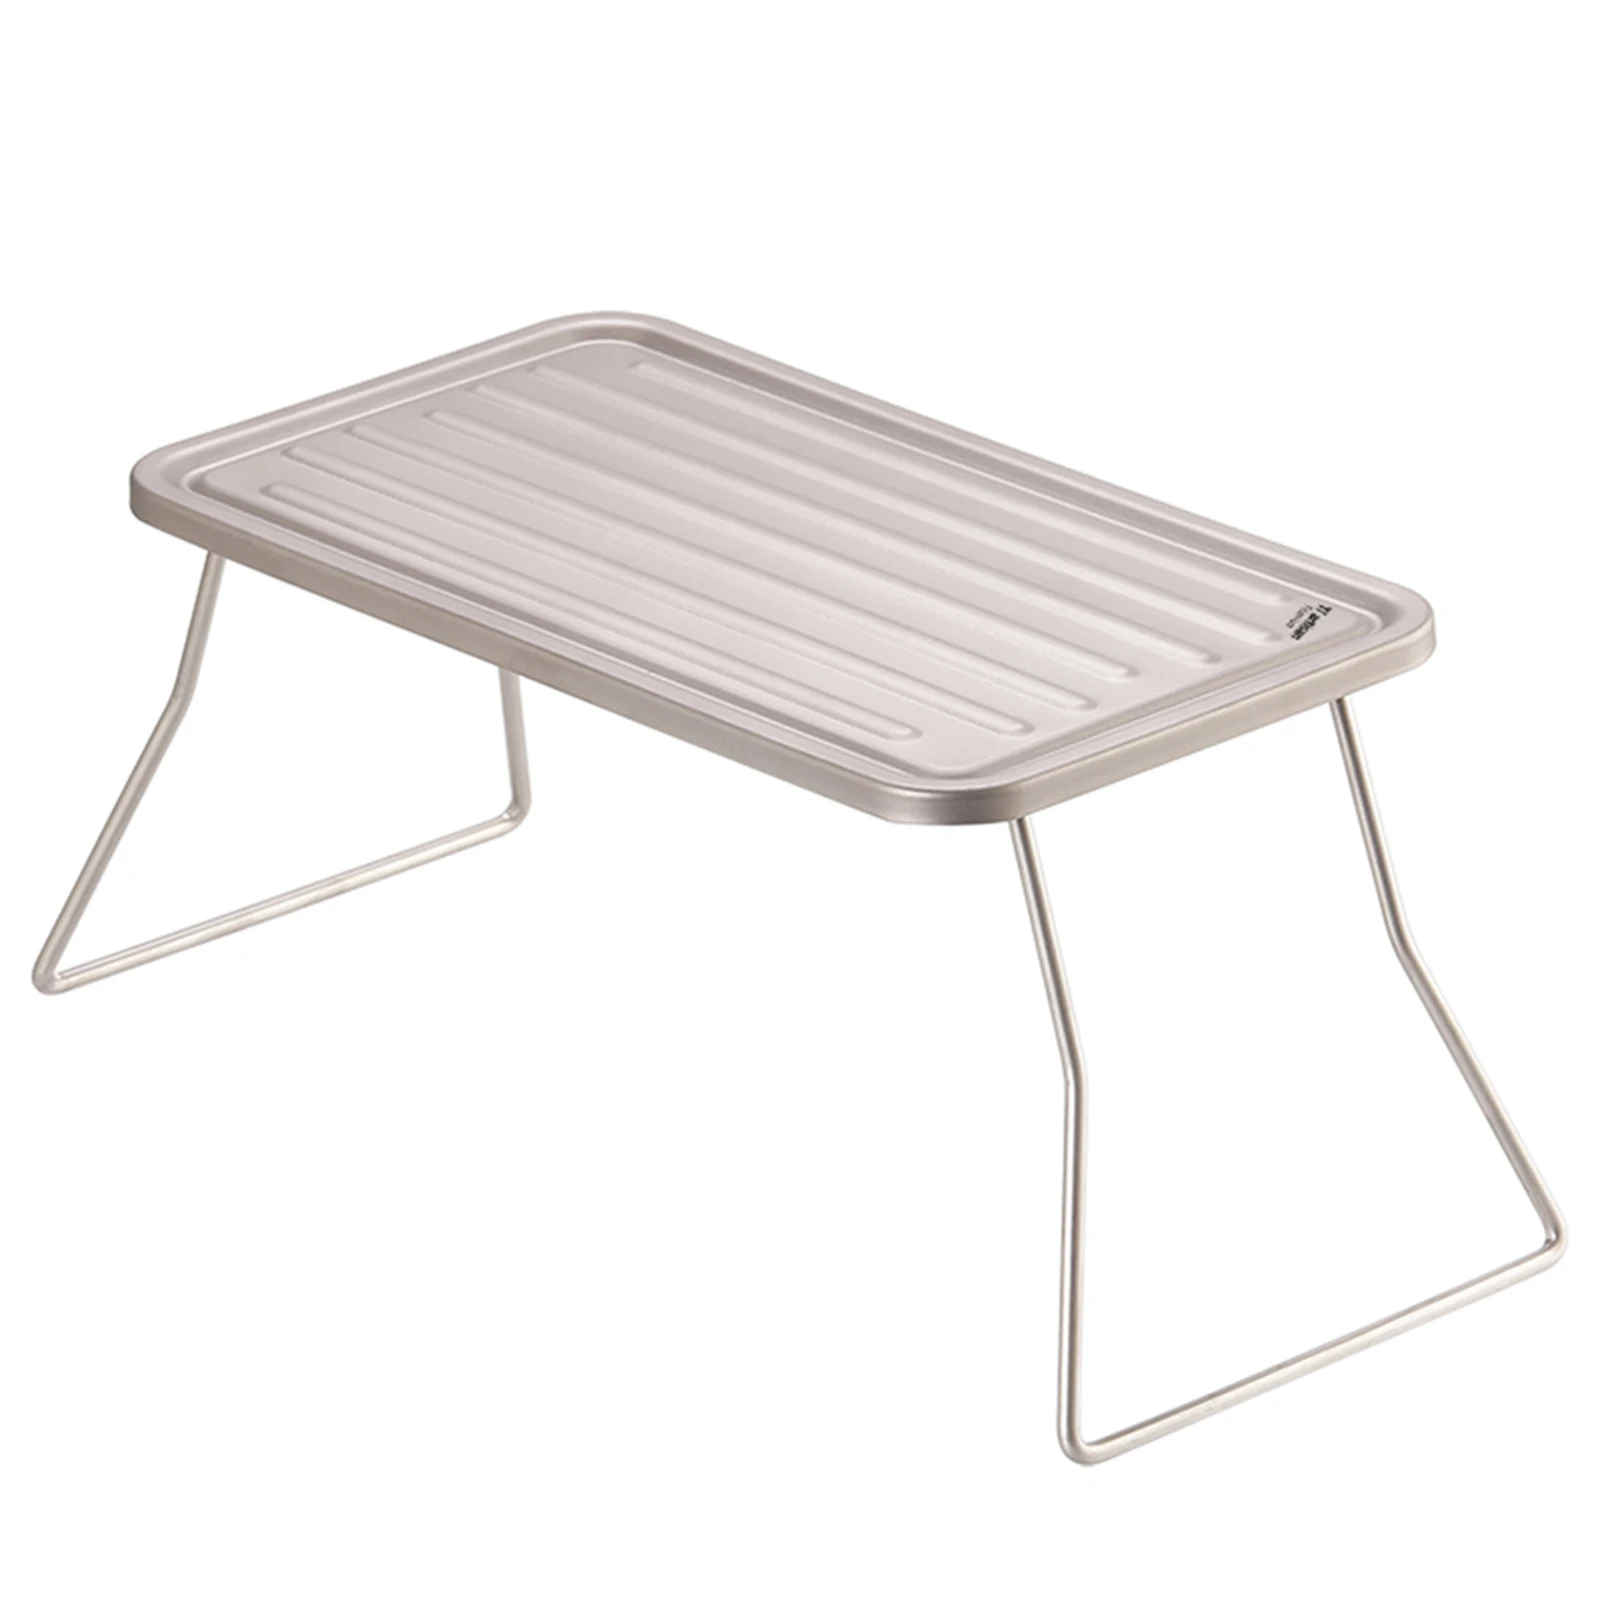 

Складной стол для кемпинга, барбекю, гриля, легко носить с собой, терка для пешего туризма, пикника, ребристая пластина, прочный и практичный дизайн